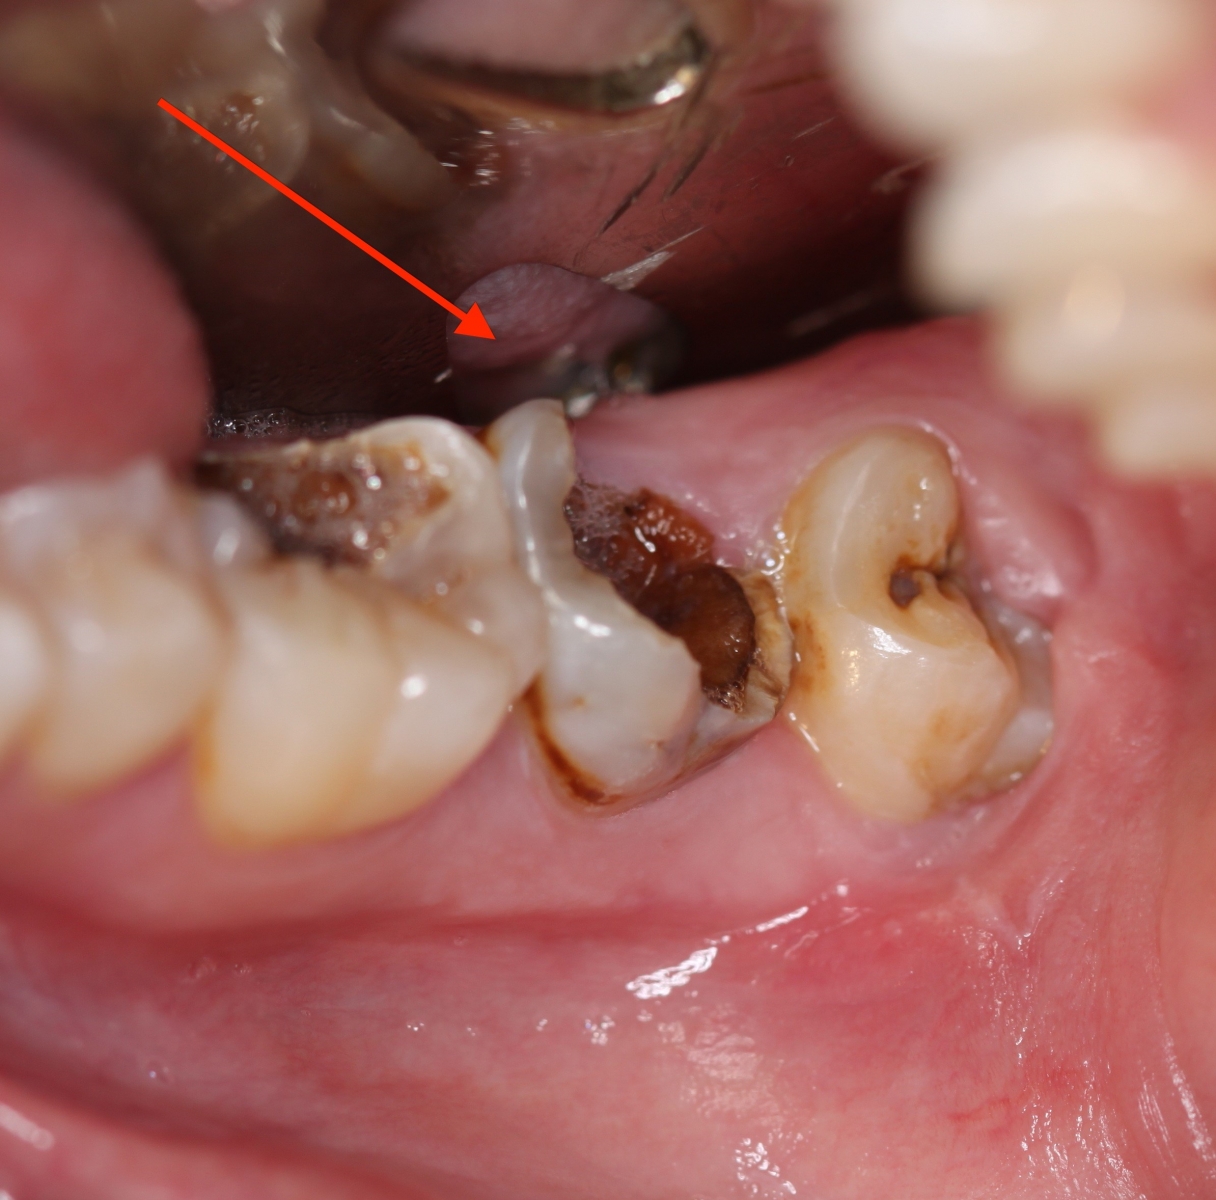 sâu răng và các bệnh lý sâu răng bạn phải biết 